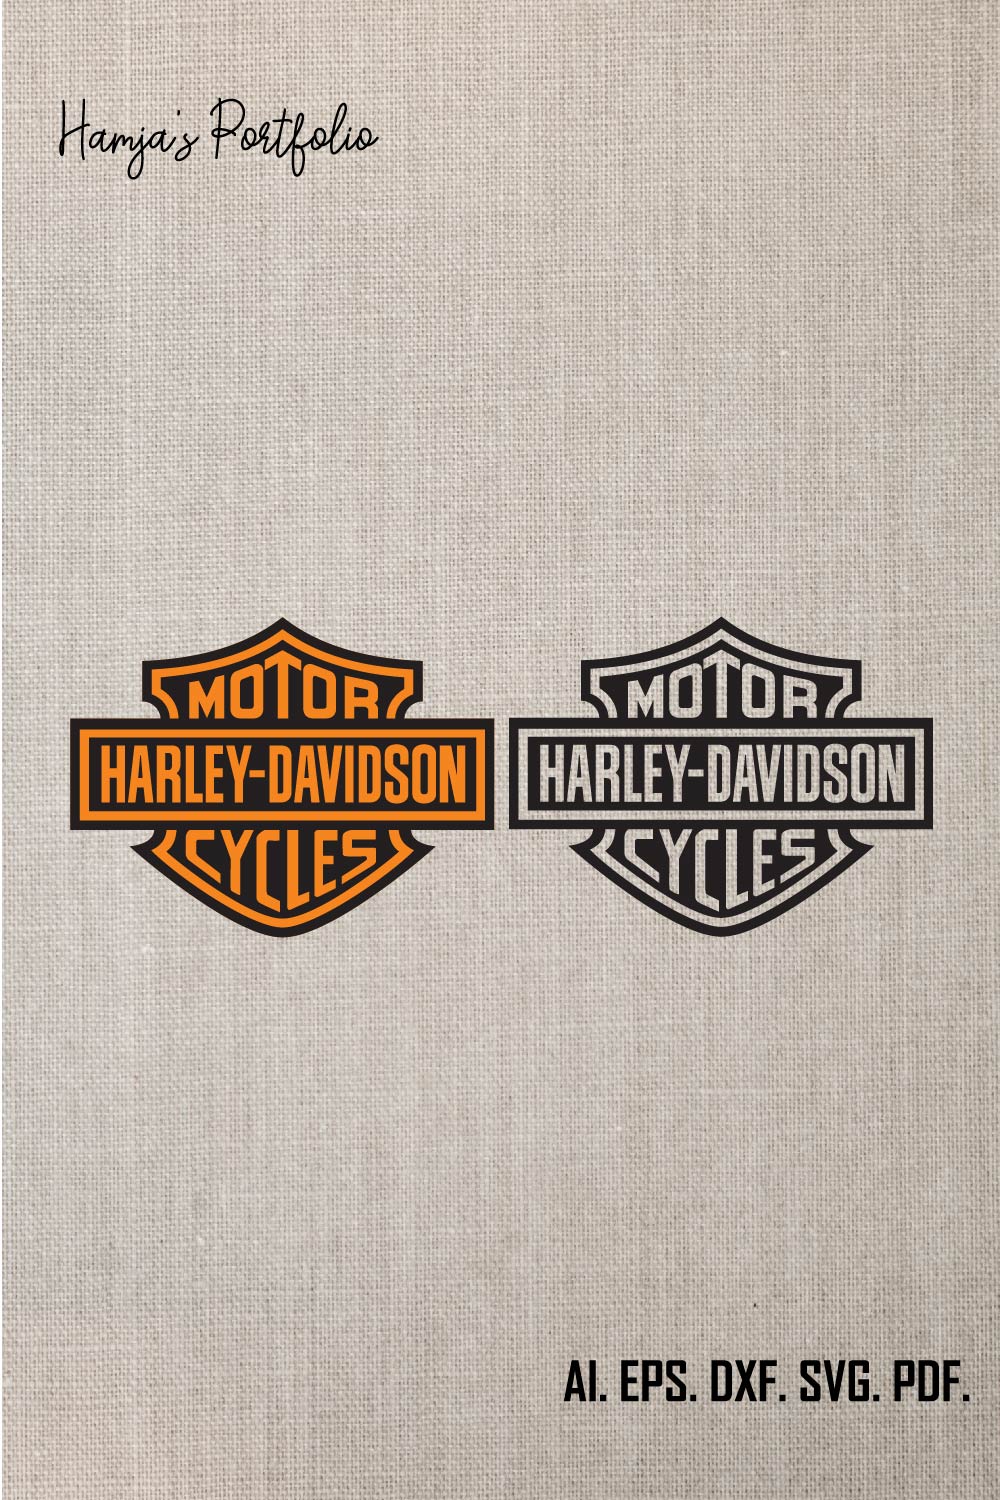 Harley davidson motor svg Gift For Man and Boy SVG PNG EPS dxf,harley davidson logo vector set pinterest preview image.